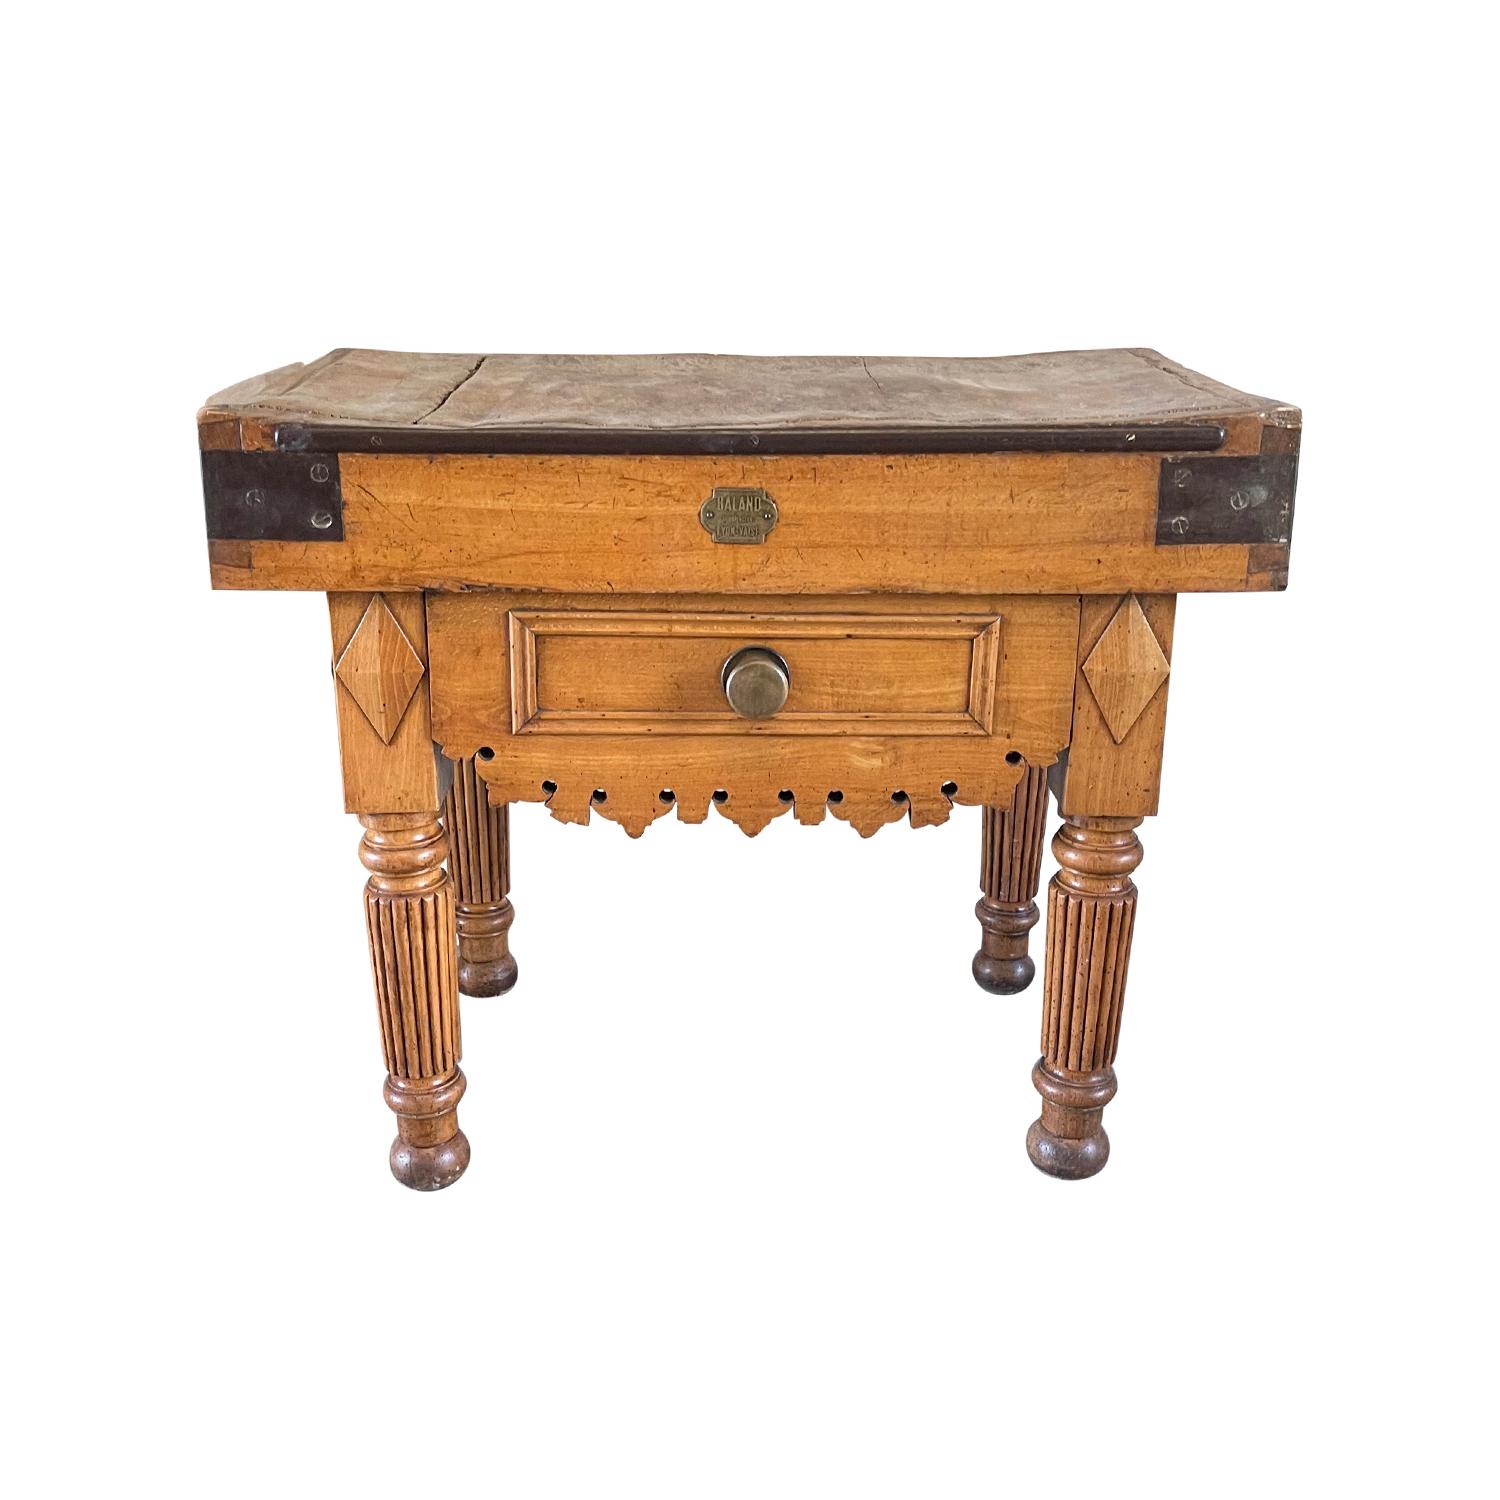 Ein antiker französischer Louis Philippe Butcher Block Tisch des späten 19. Jahrhunderts aus handgefertigtem Buchenholz, in gutem Zustand. Schwerer Holzkorpus mit rhombusförmigem Detail auf den kannelierten Beinen mit einer überhöhten Zierschürze